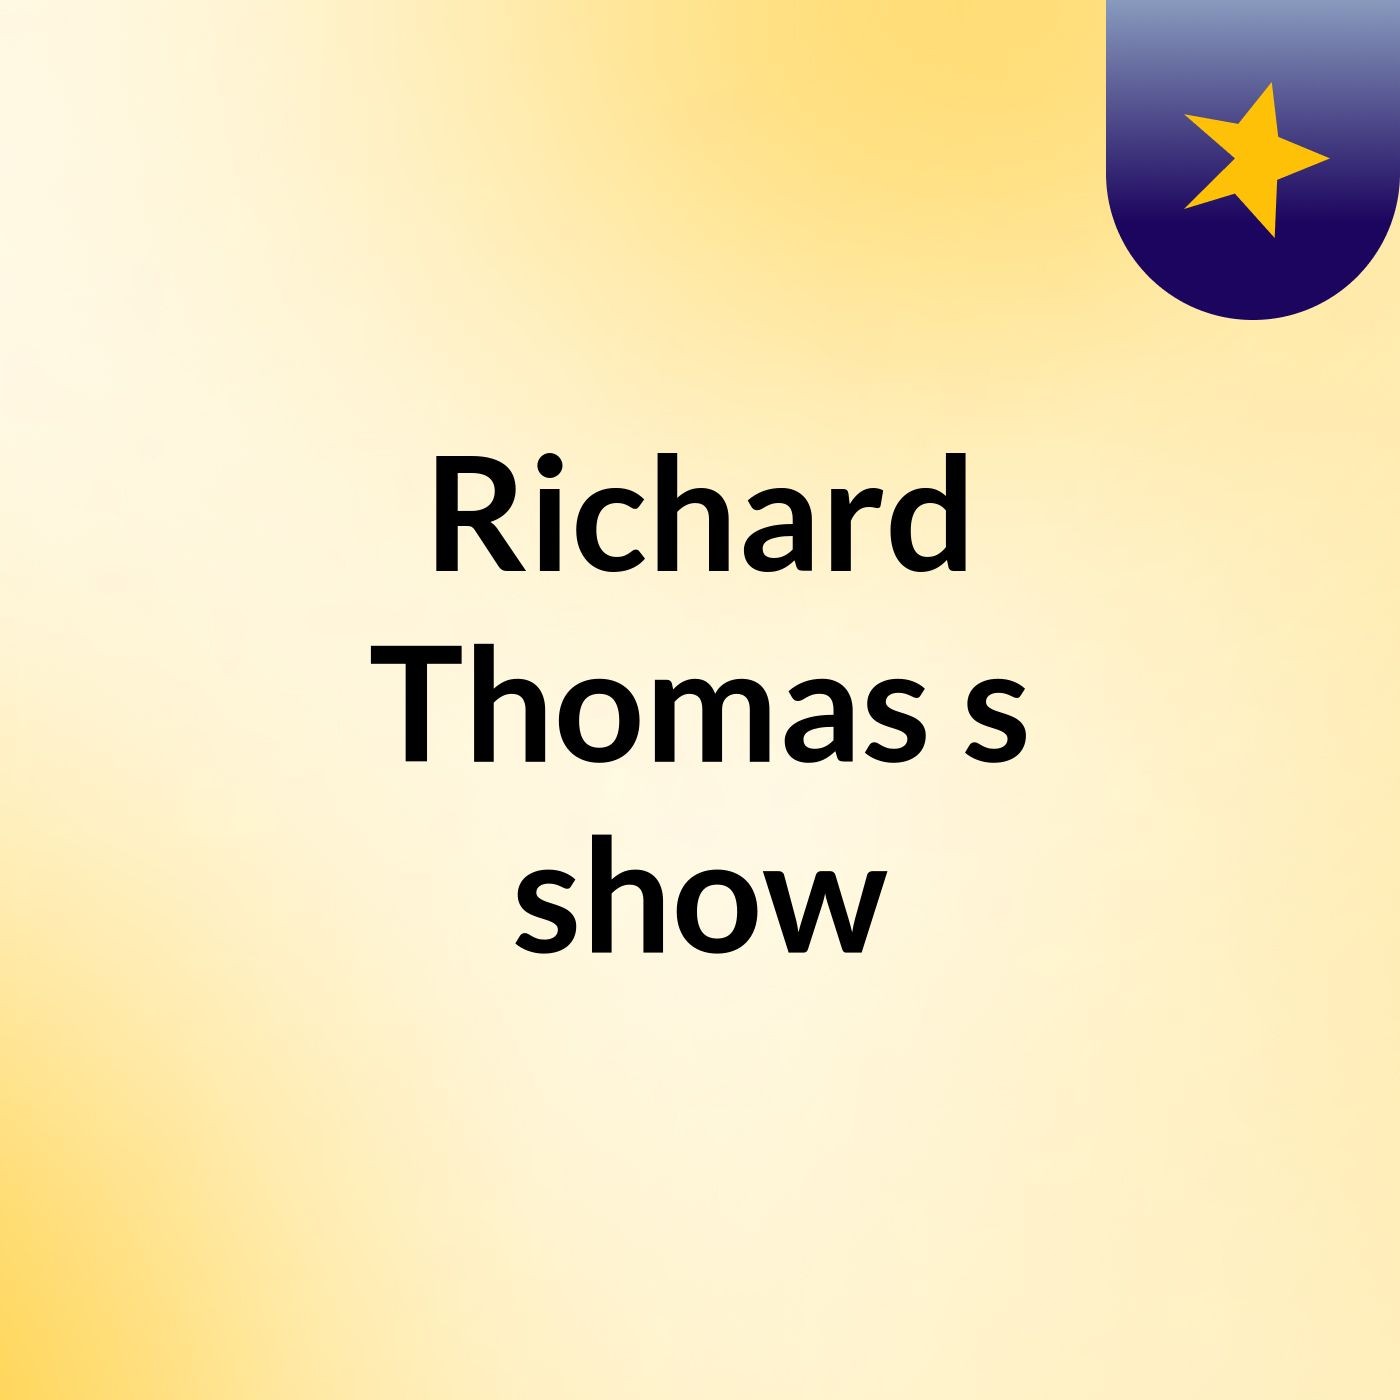 Richard Thomas's show